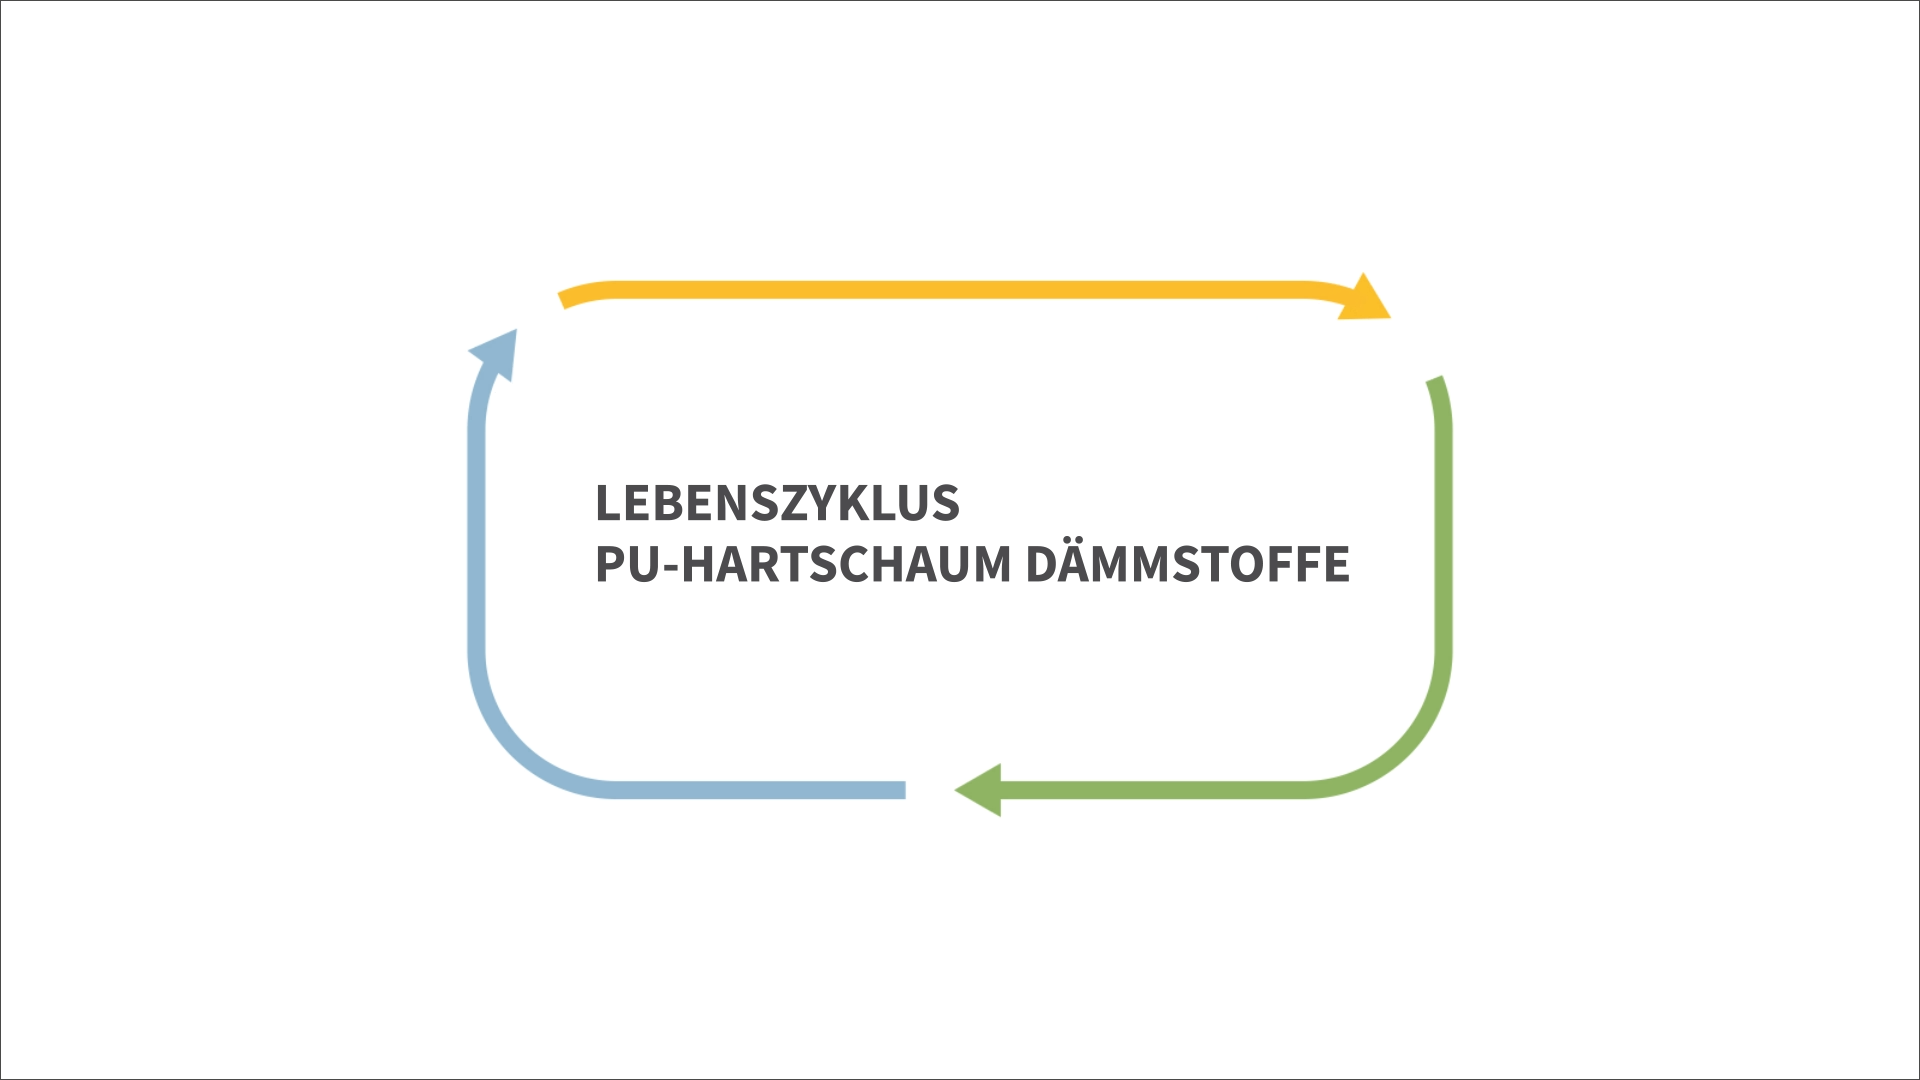 Kreislauf der wichtige Stationen im Lebenszyklus von PU-Hartschaum Dämmstoffen zeigt. 